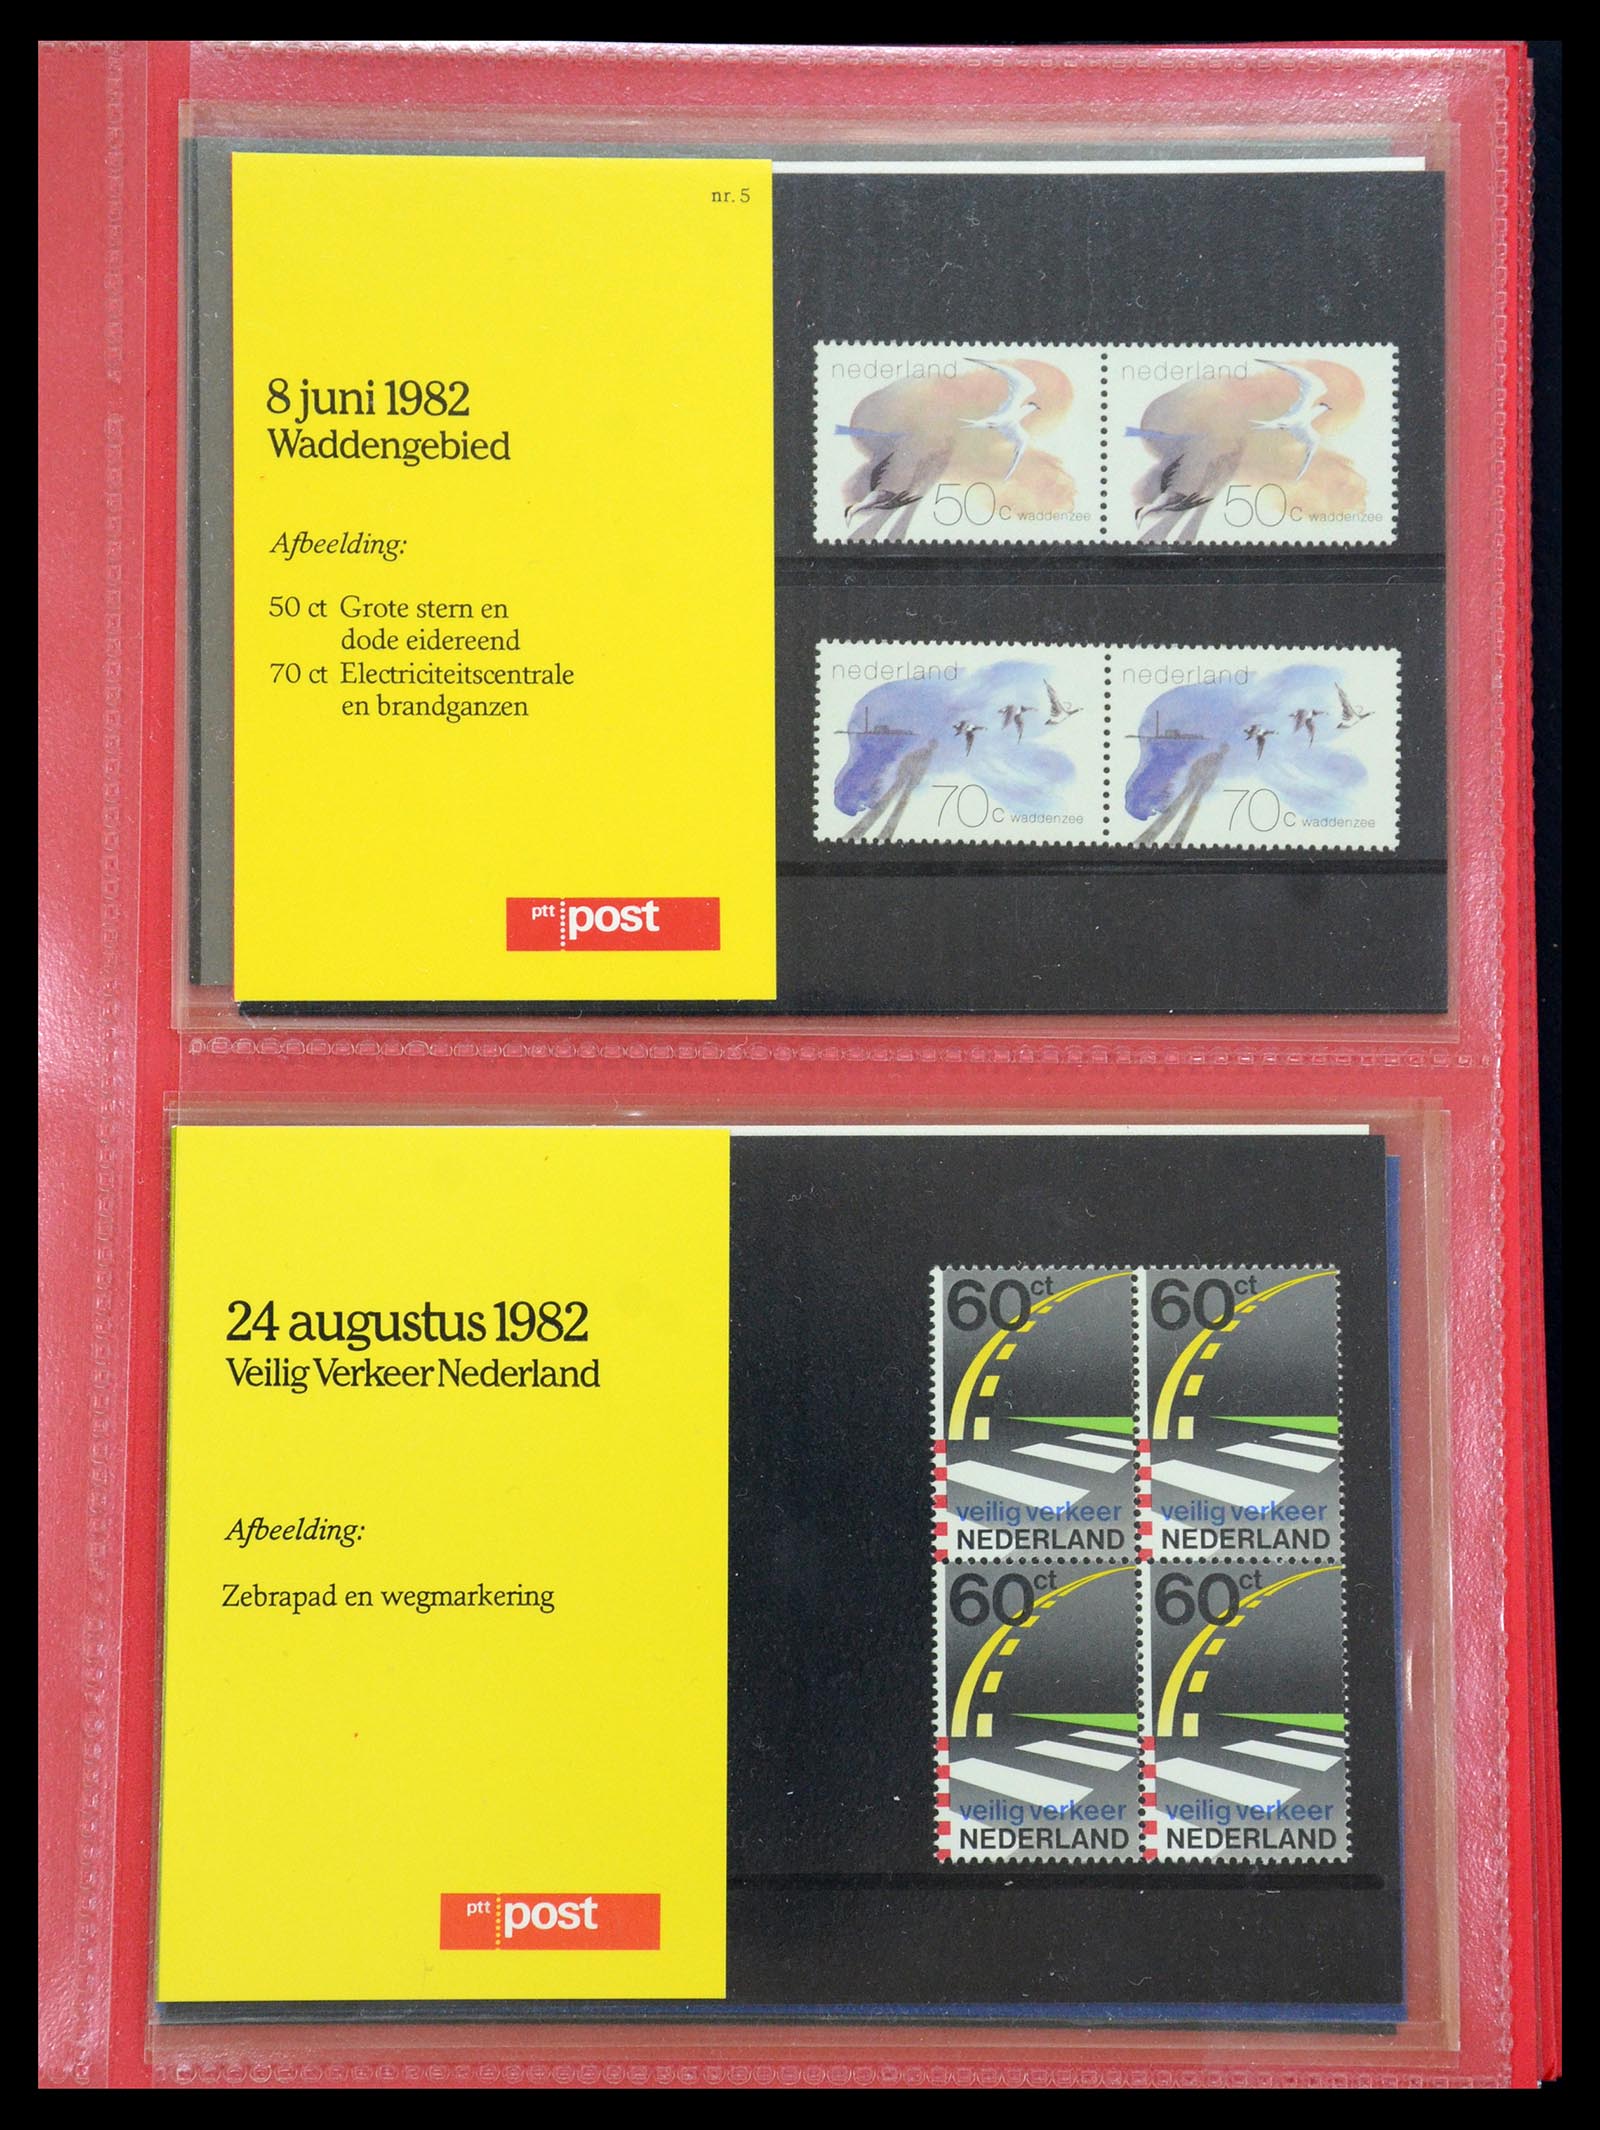 35692 003 - Stamp Collection 35692 Netherlands presentation packs 1982-2021!!